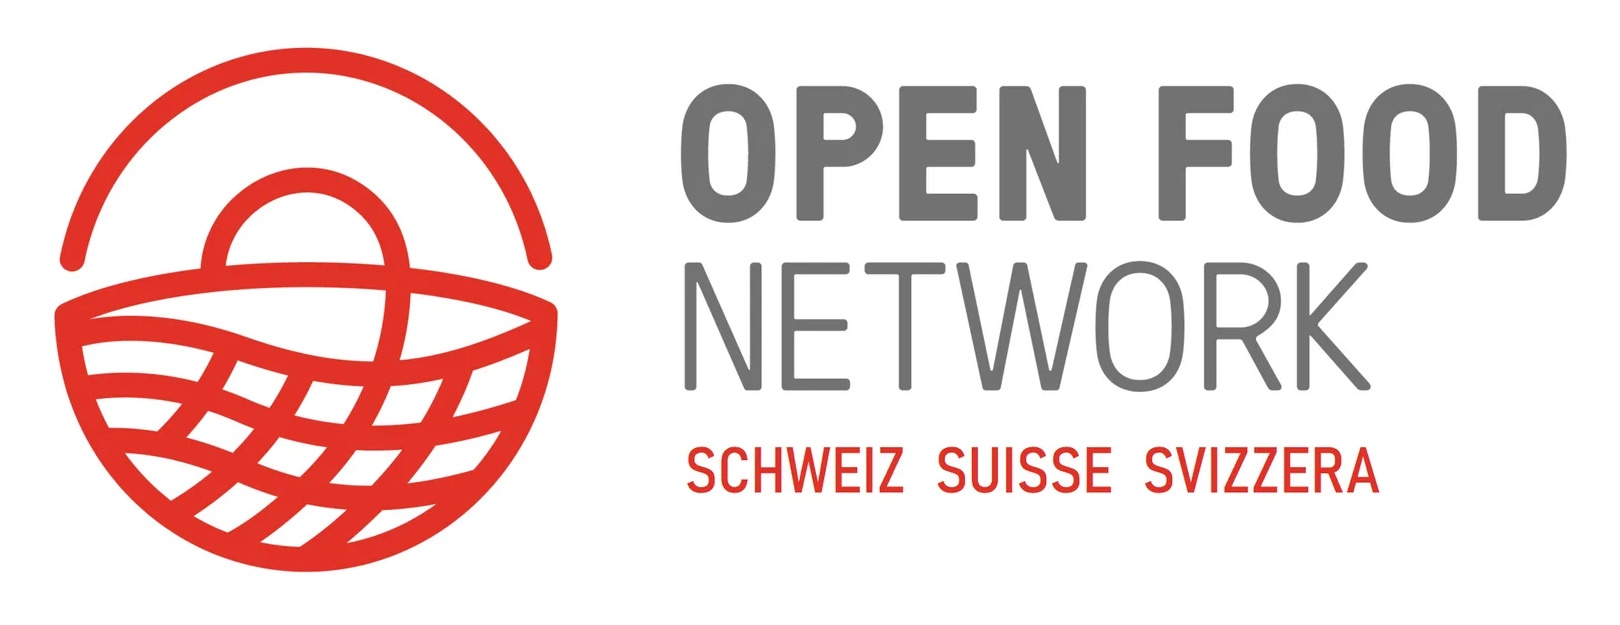 OpenFoodNetwork - Schweiz, Suisse, Svizzera